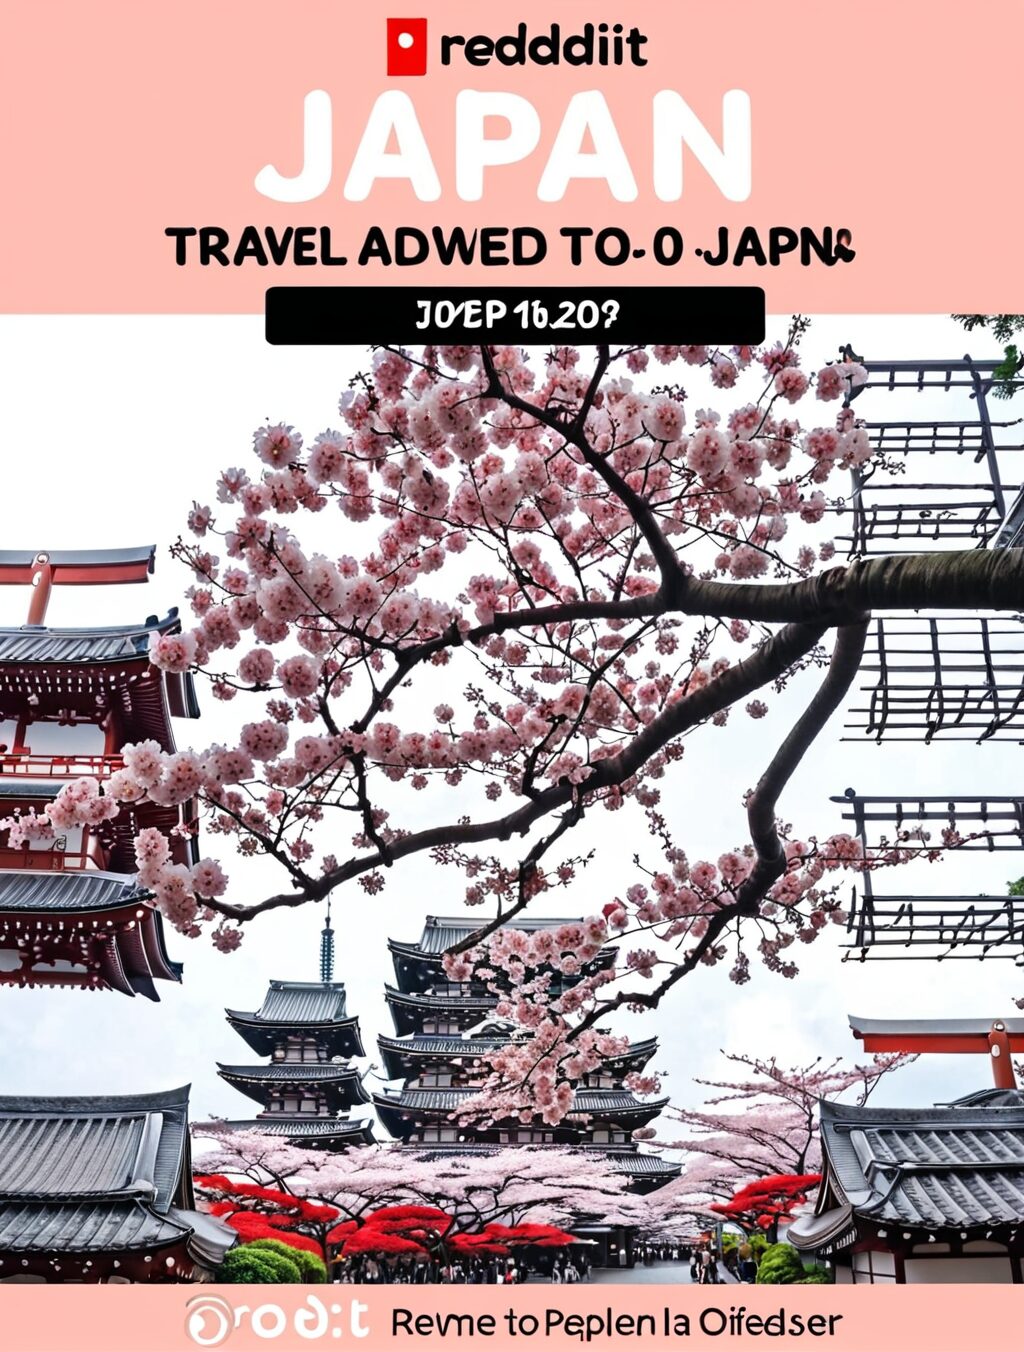 should i travel to japan reddit